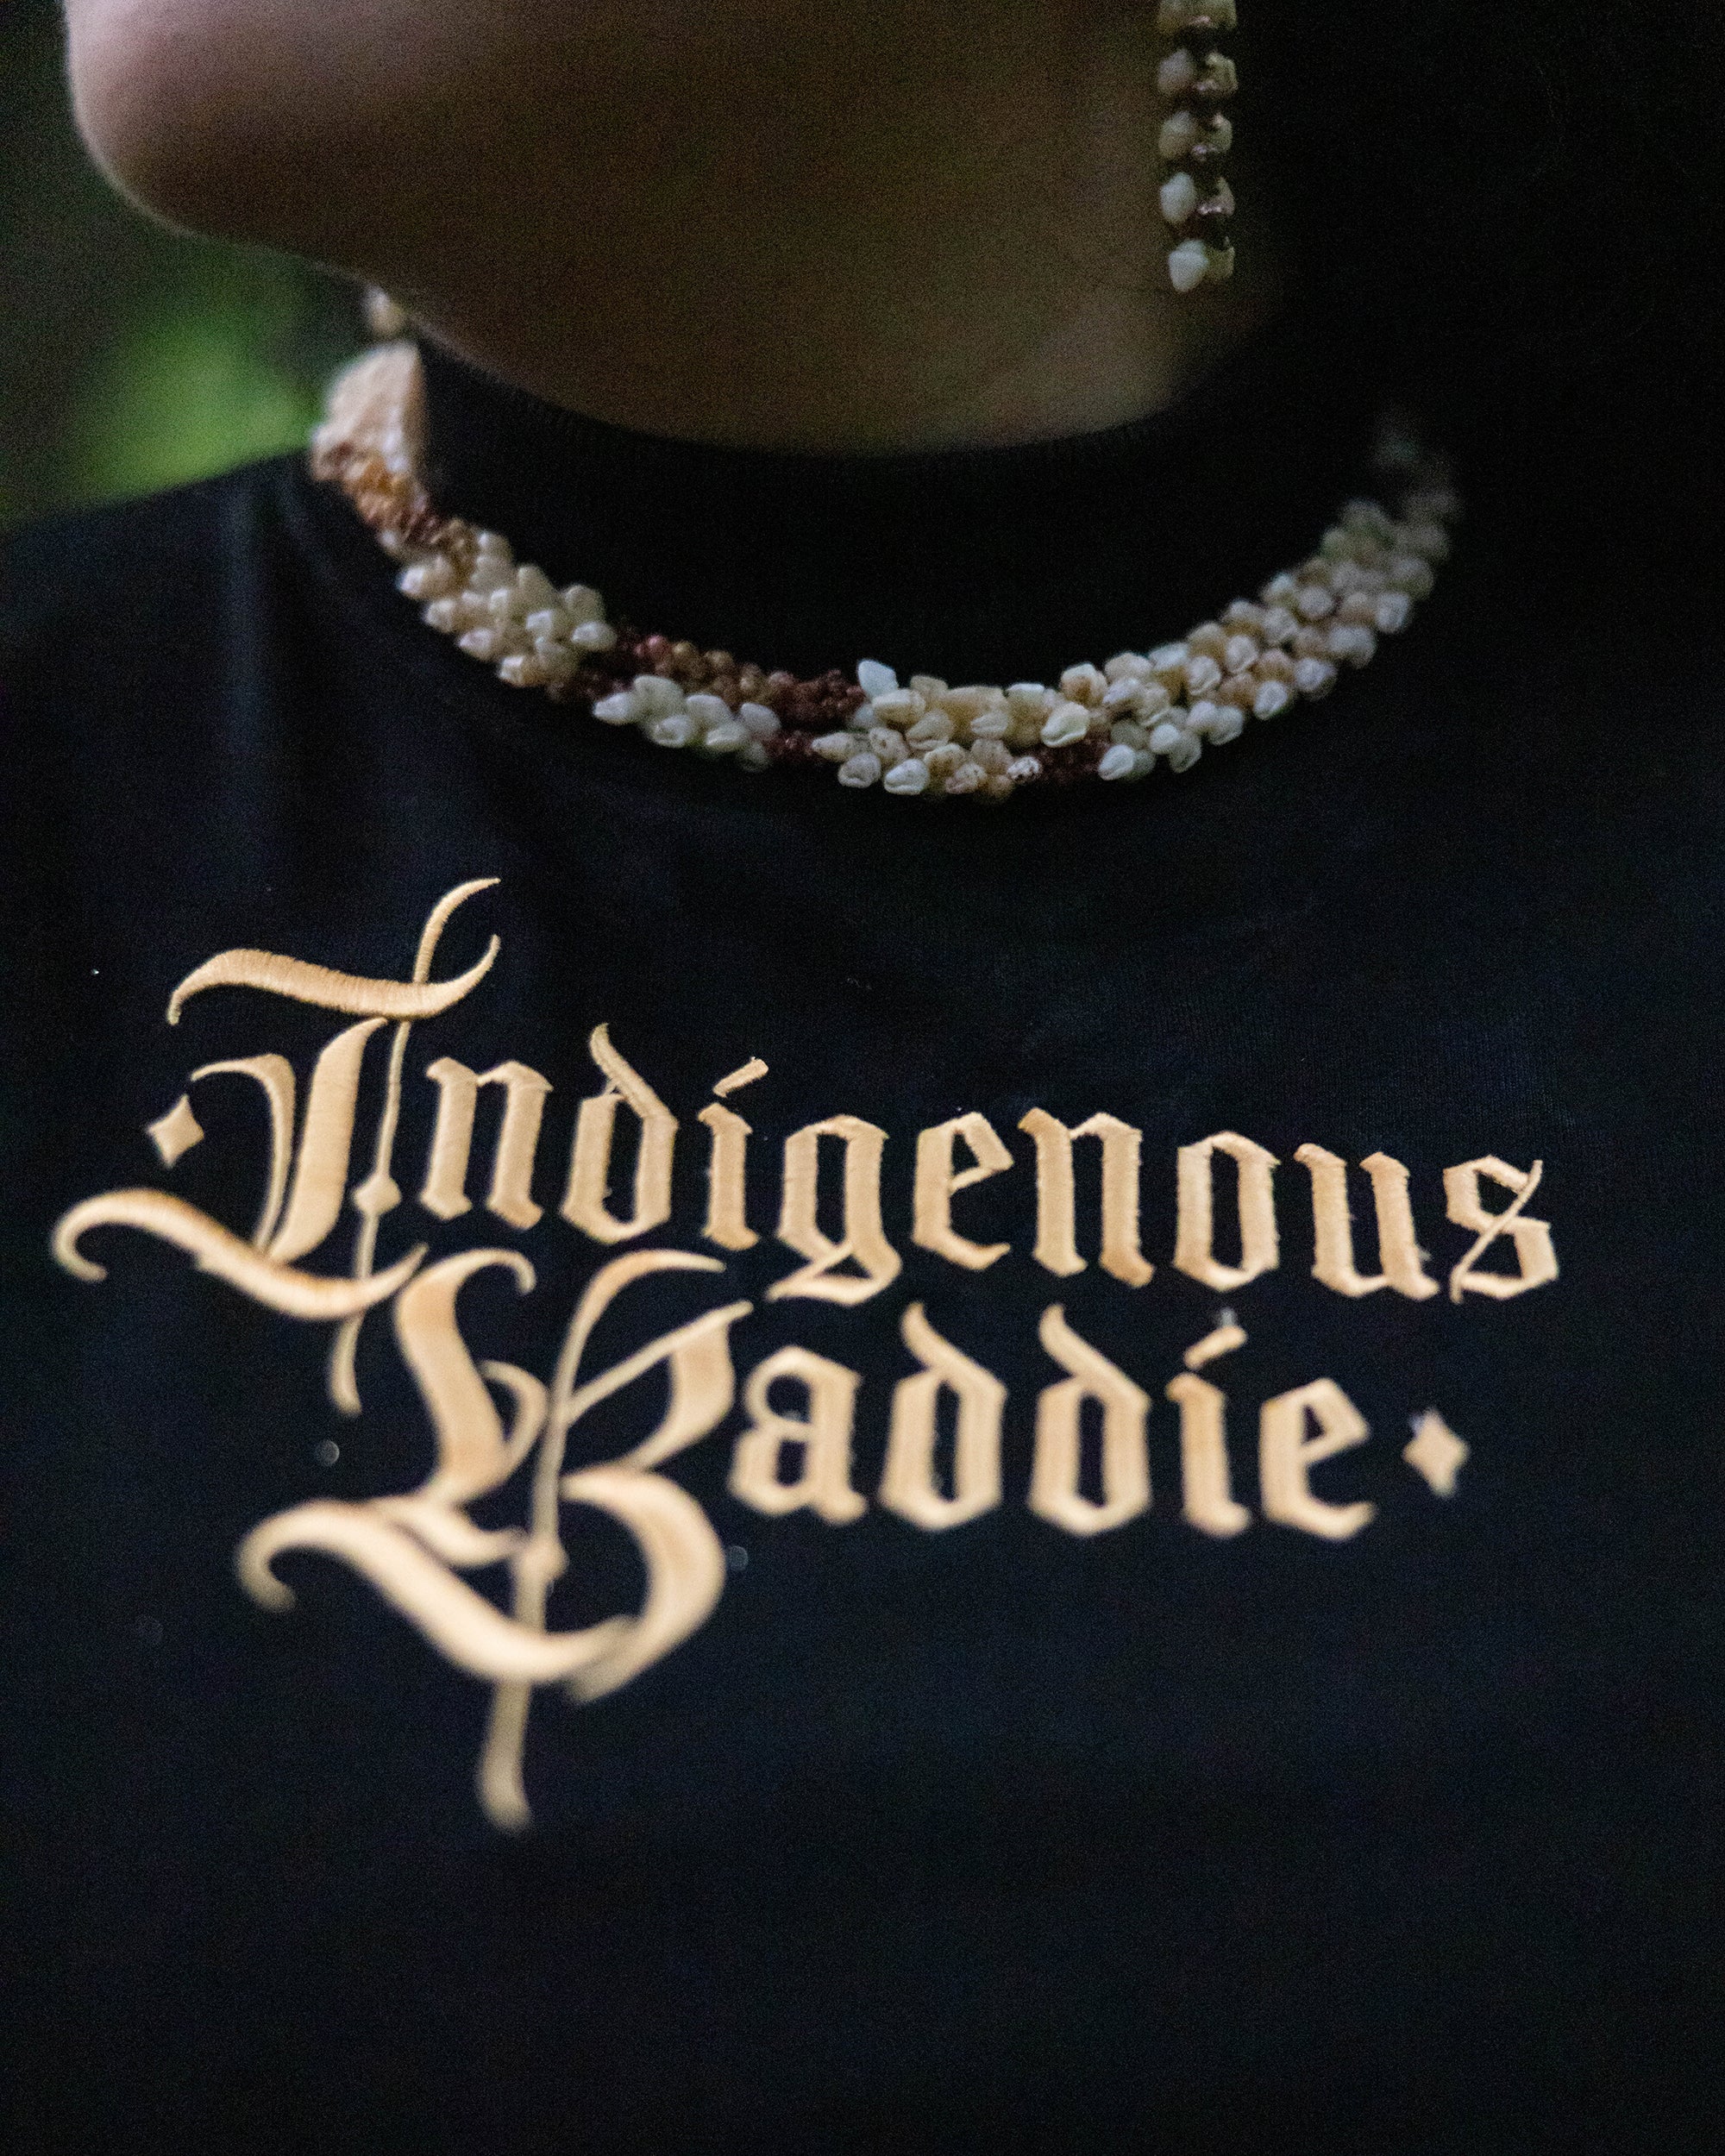 Indigenous Baddie Sweater in Black